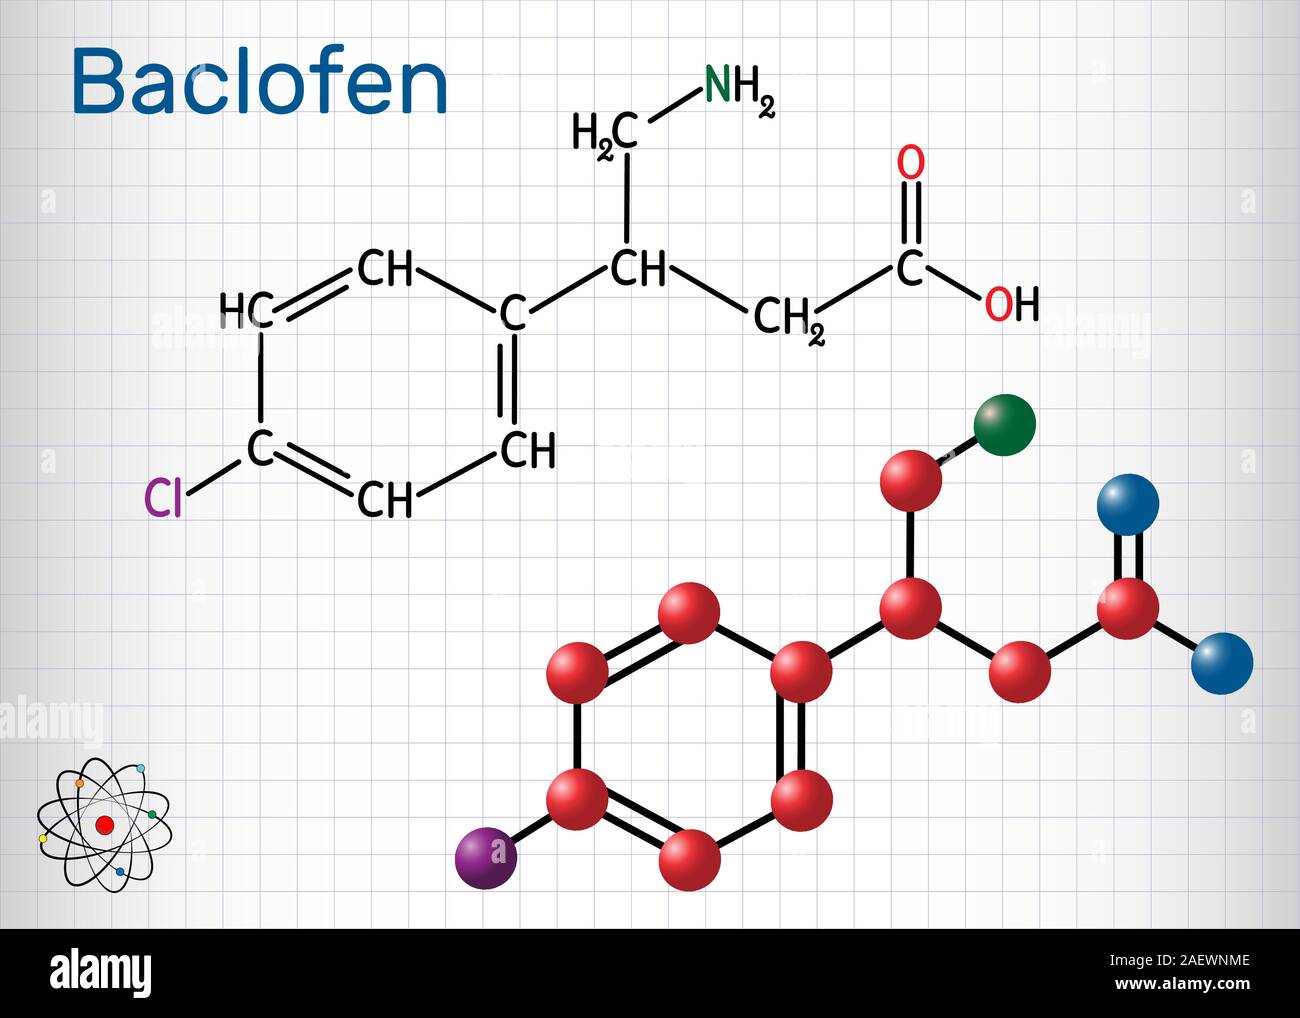 Baclofen Molekül C10H12ClNO2, ist ein Medikament, das zur Behandlung der Spastik der Muskulatur. Strukturelle chemische Formel und Molekül-Modell. Blatt Papier in einer Ca Stock Vektor